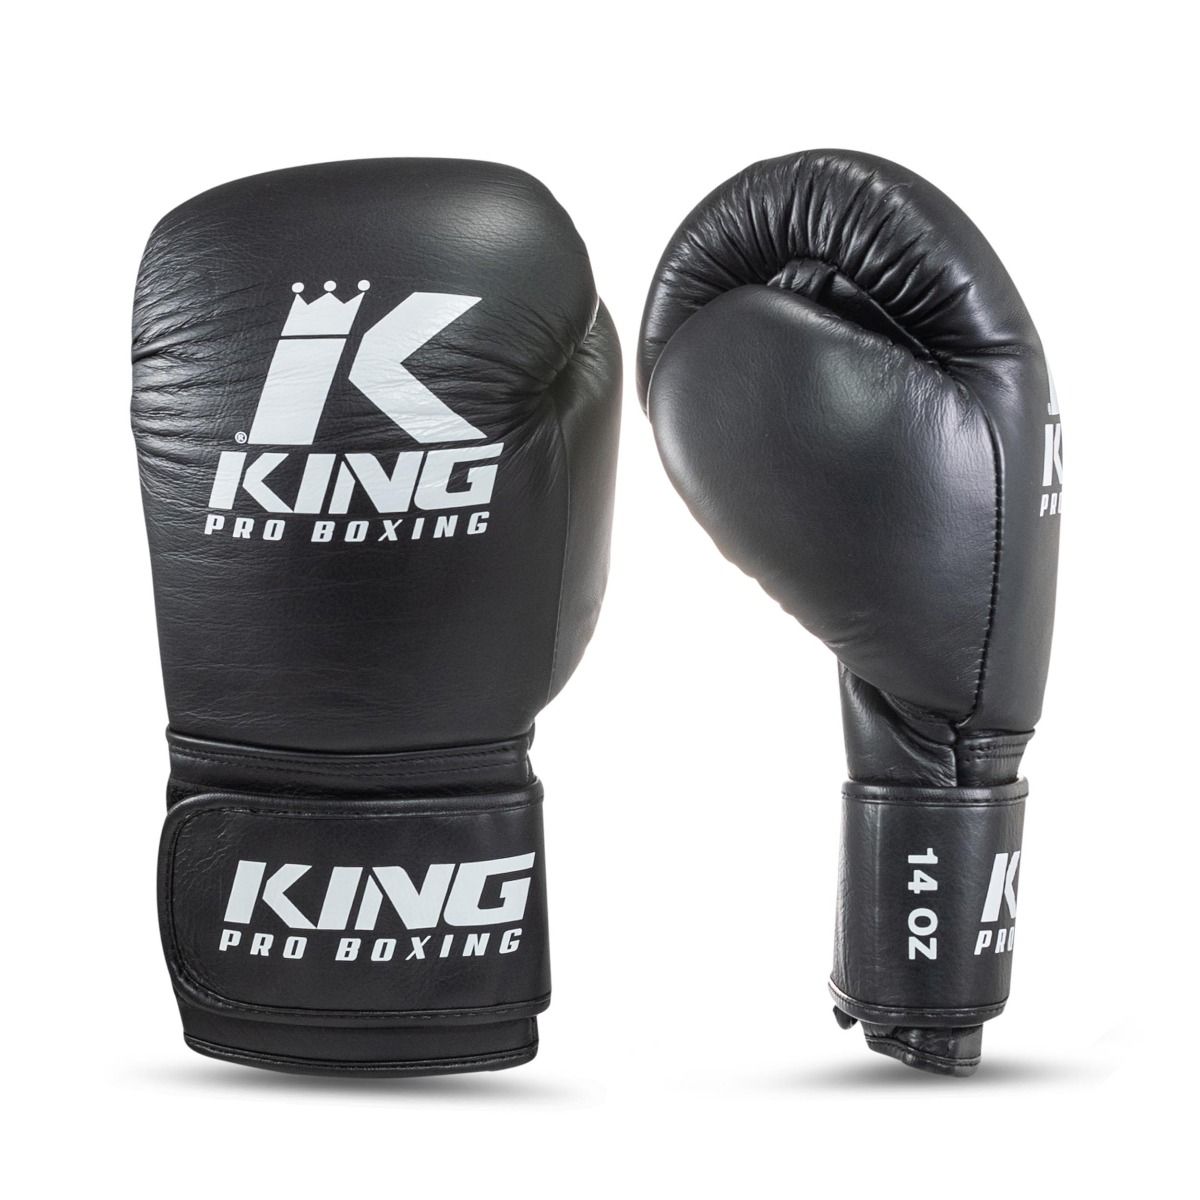 King Pro Boxing KPB/BG probox